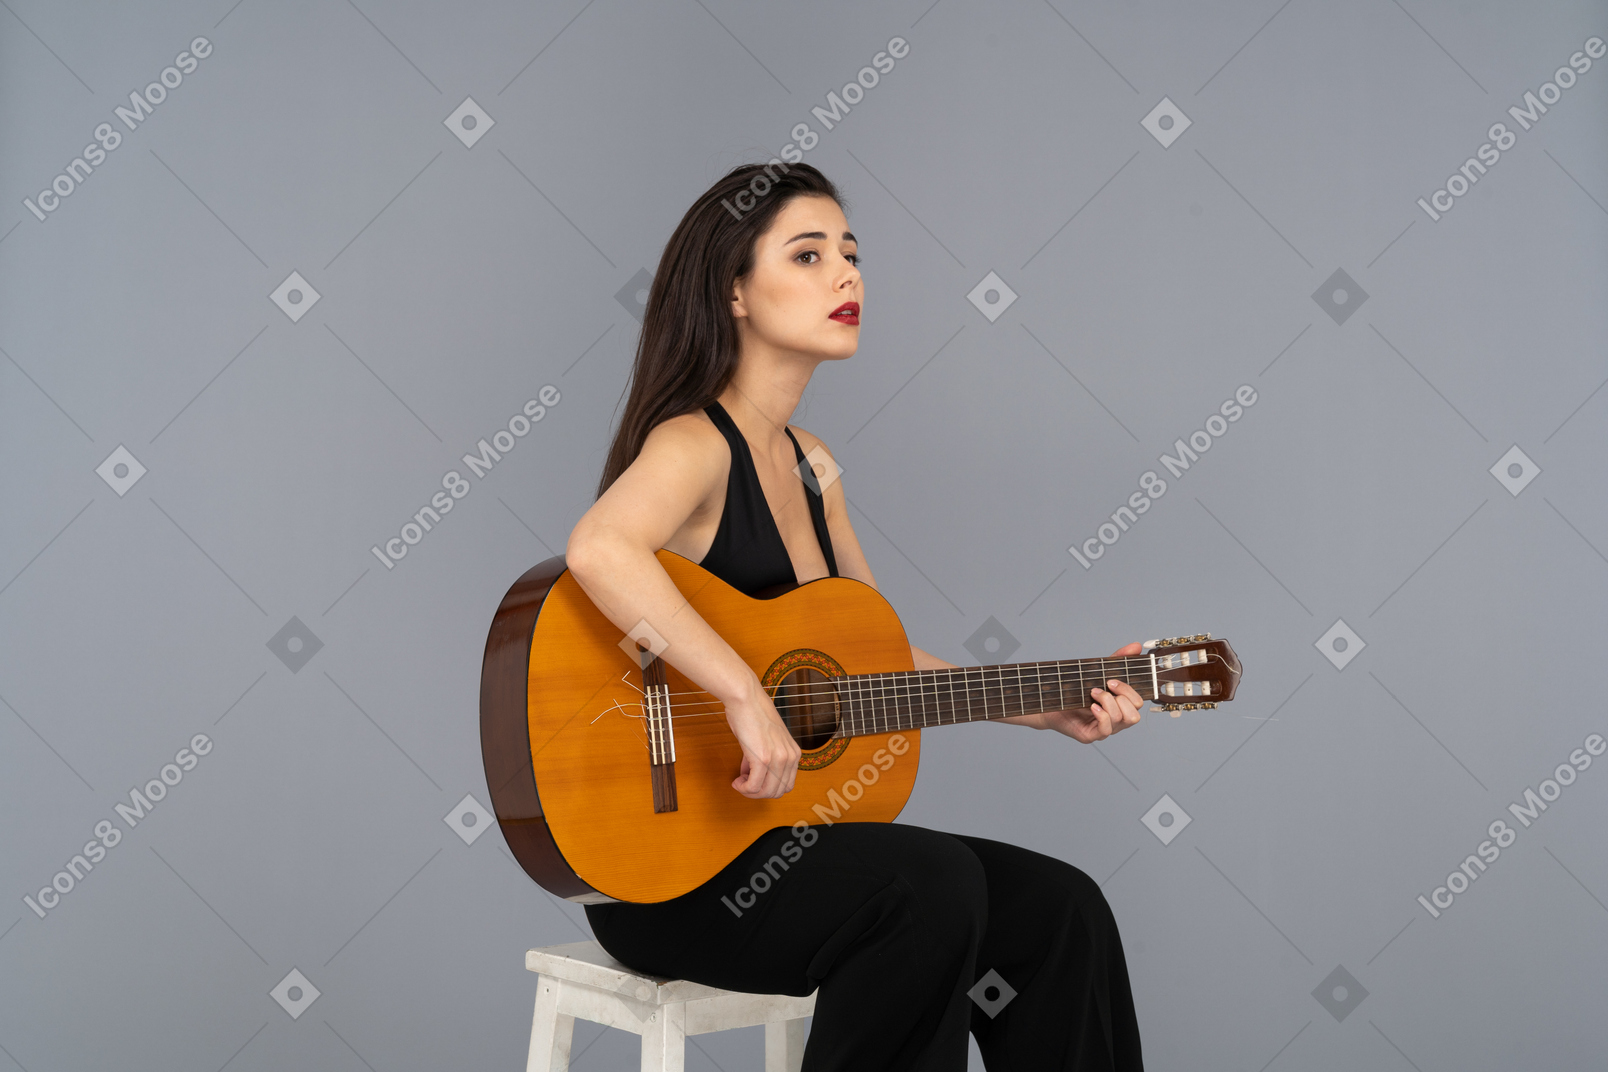 Vue de trois quarts d'une jeune femme assise en costume noir tenant la guitare